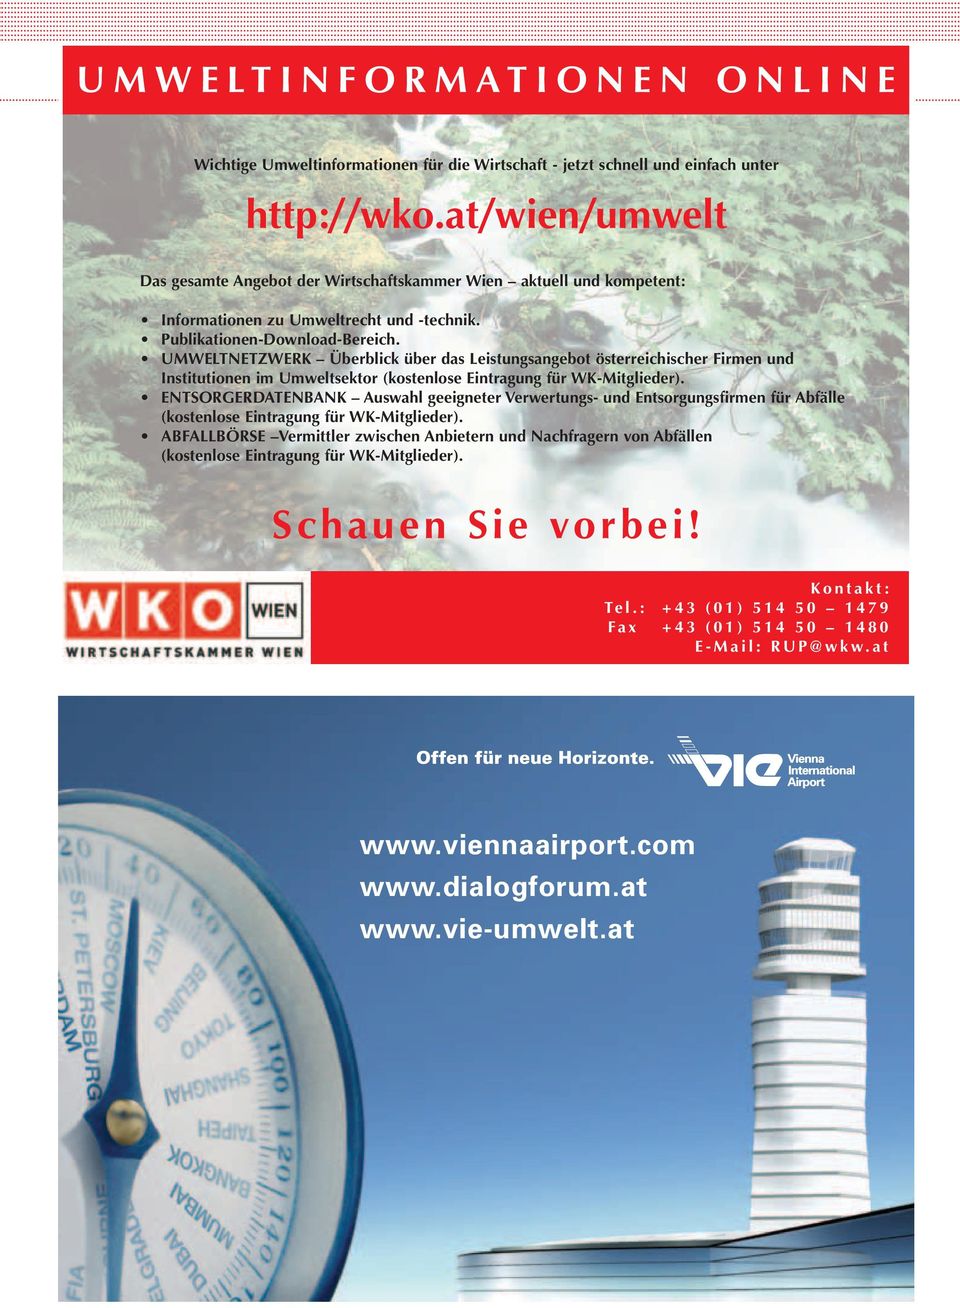 UMWELTNETZWERK Überblick über das Leistungsangebot österreichischer Firmen und Institutionen im Umweltsektor (kostenlose Eintragung für WK-Mitglieder).